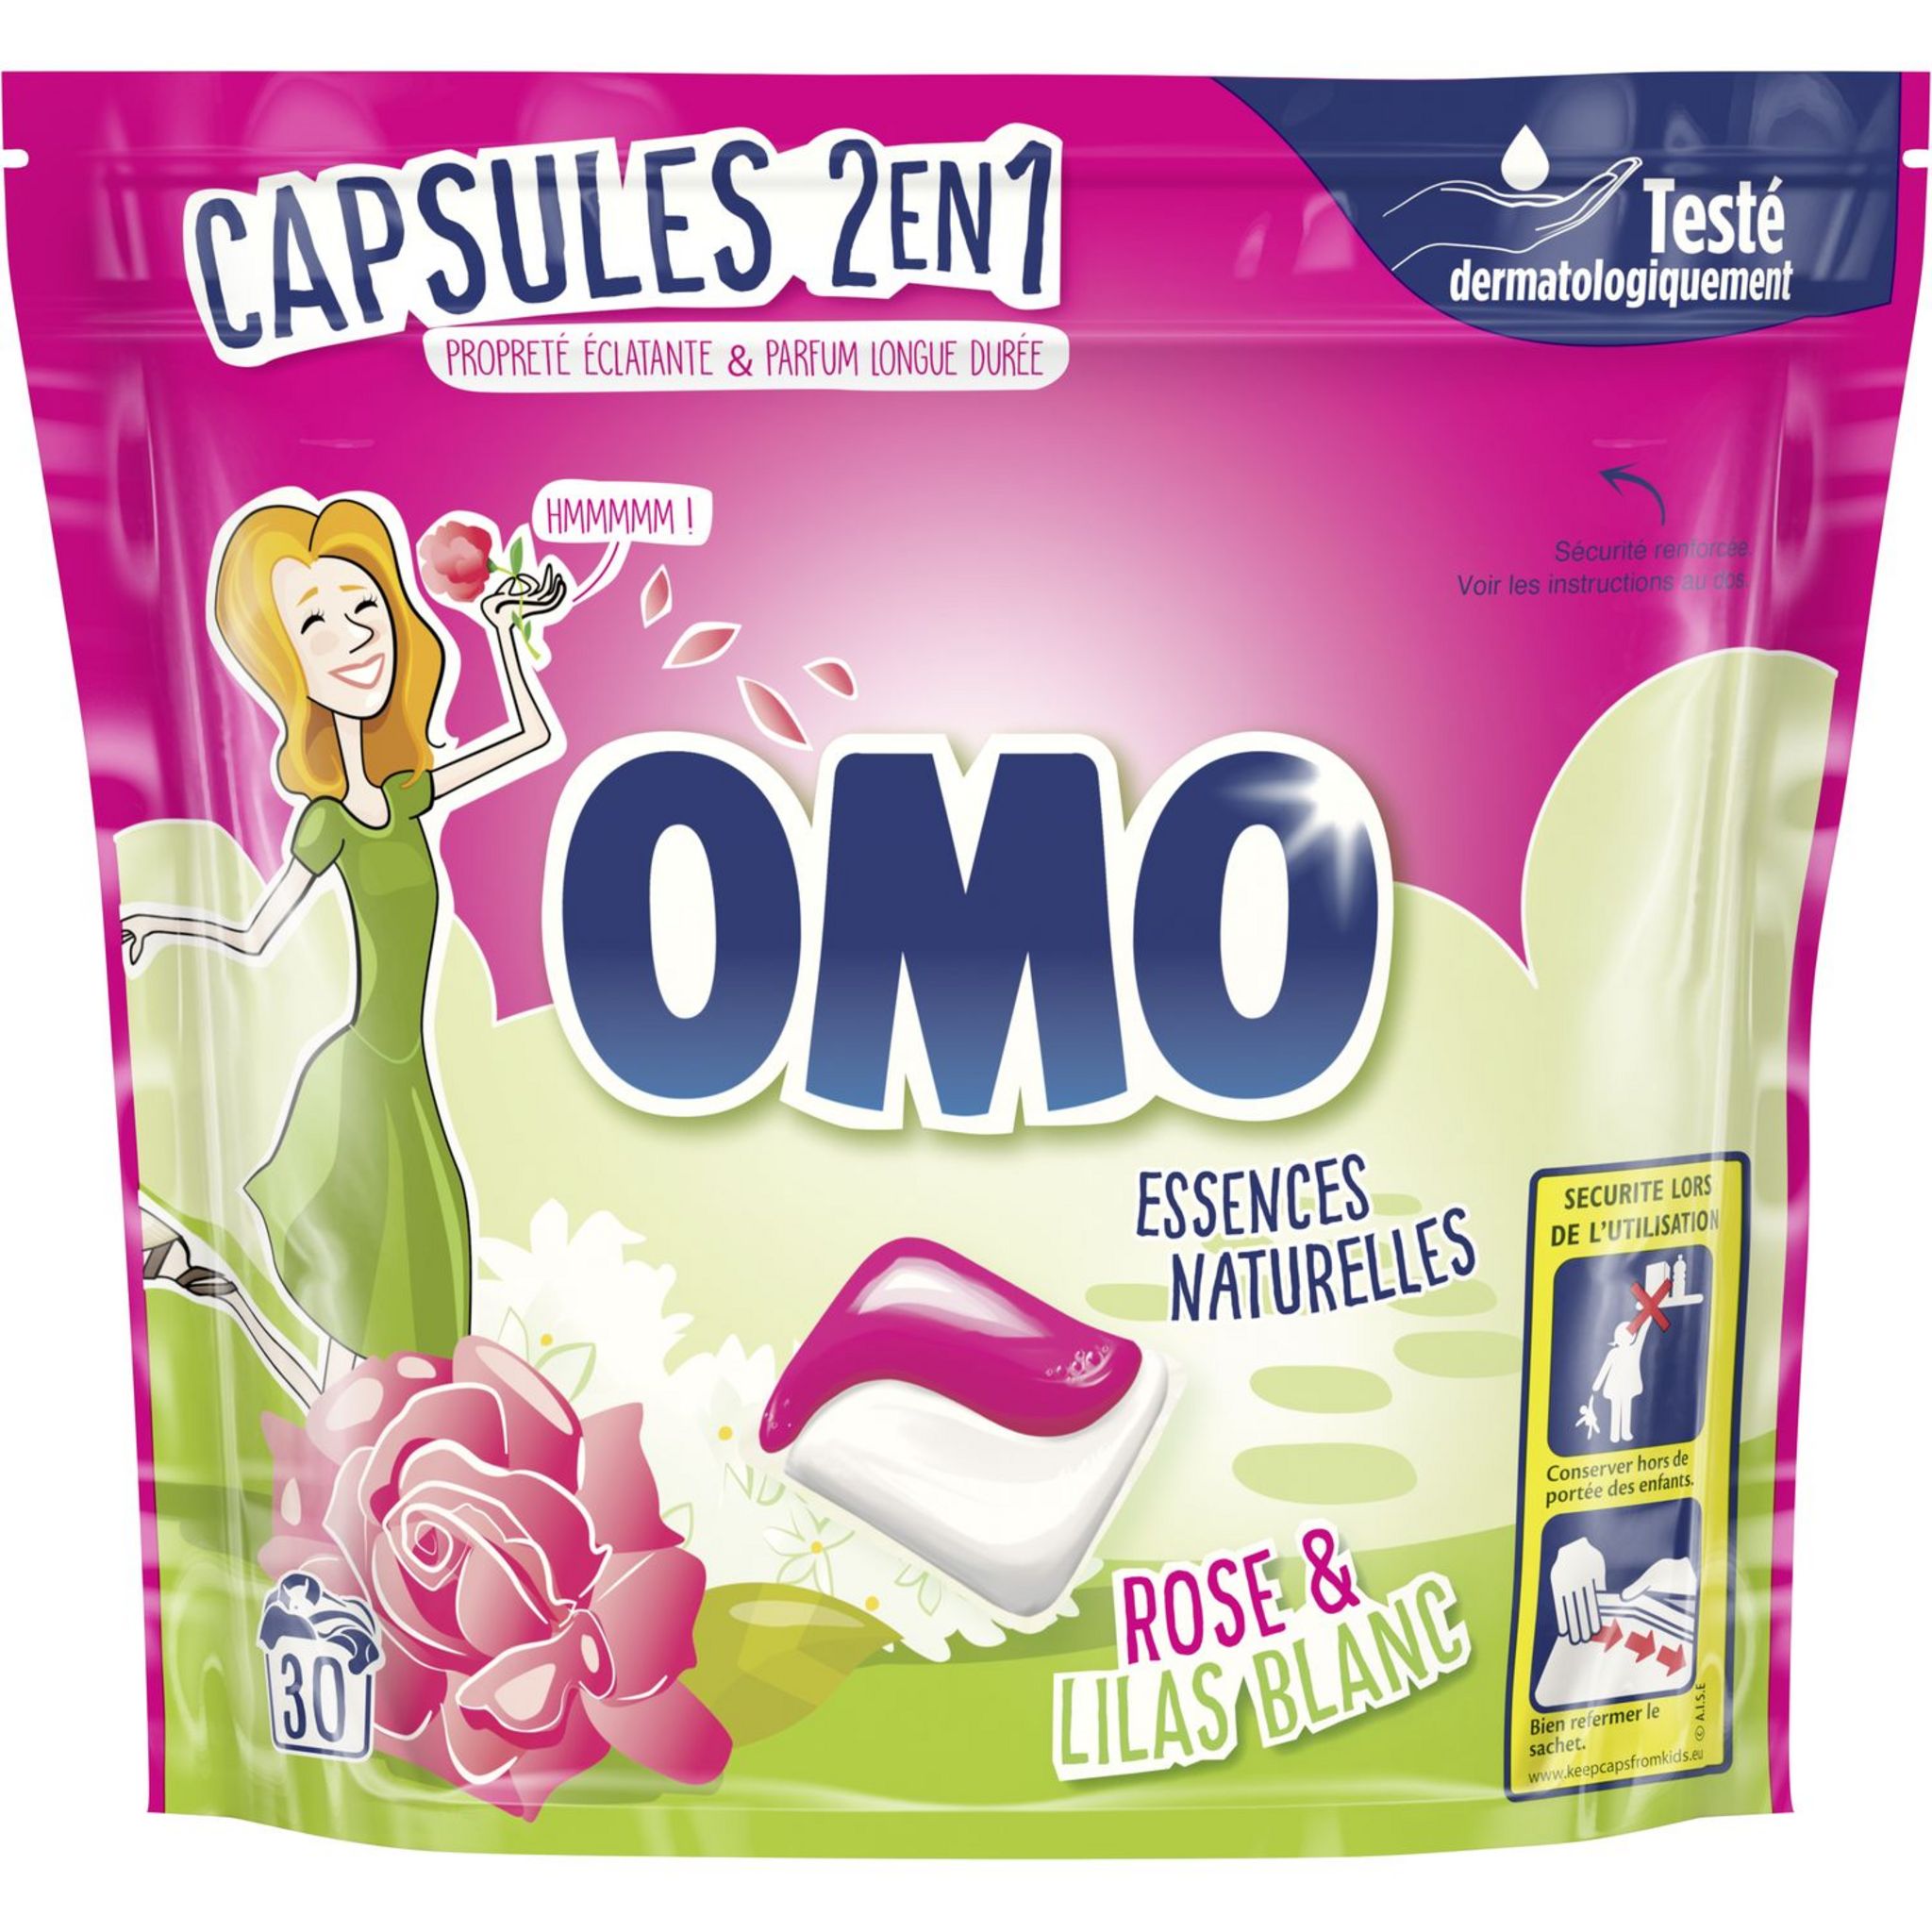 Achat Promotion Omo Lessive Capsule 3en1 Rose & Lilas Blanc, 27 pièces